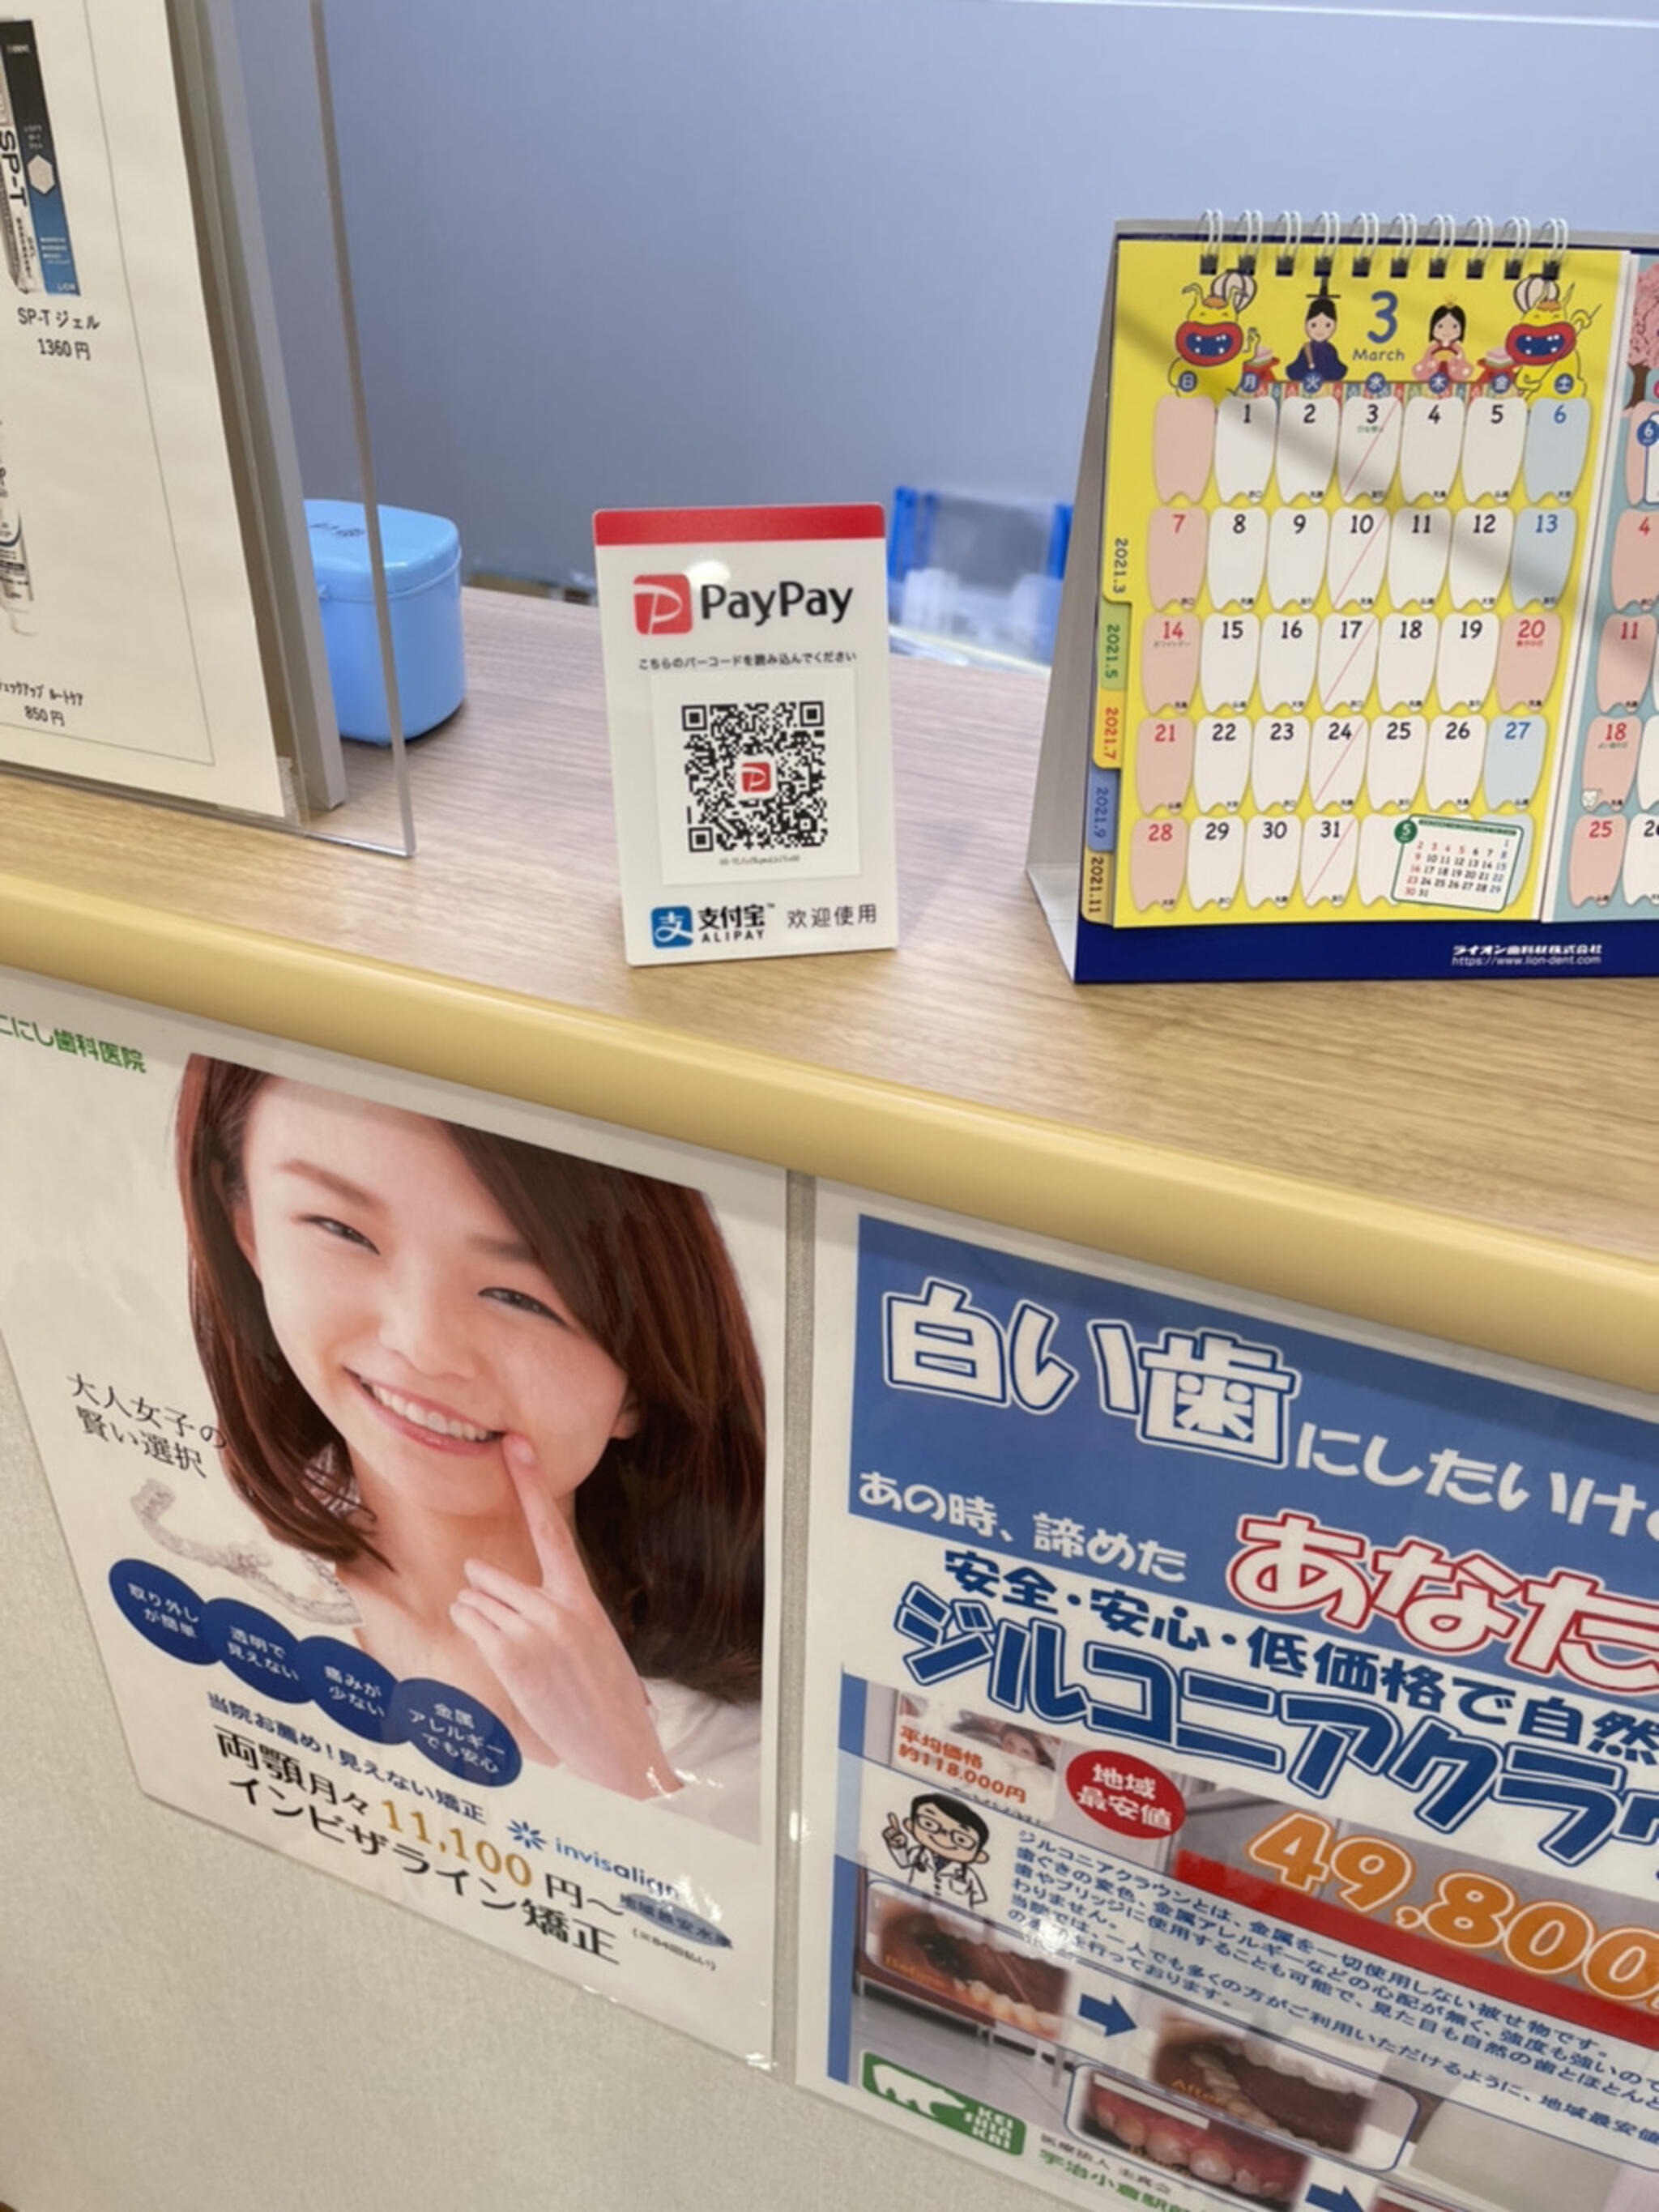 宇治小倉駅前 こにし歯科医院からのお知らせ(paypay)に関する写真